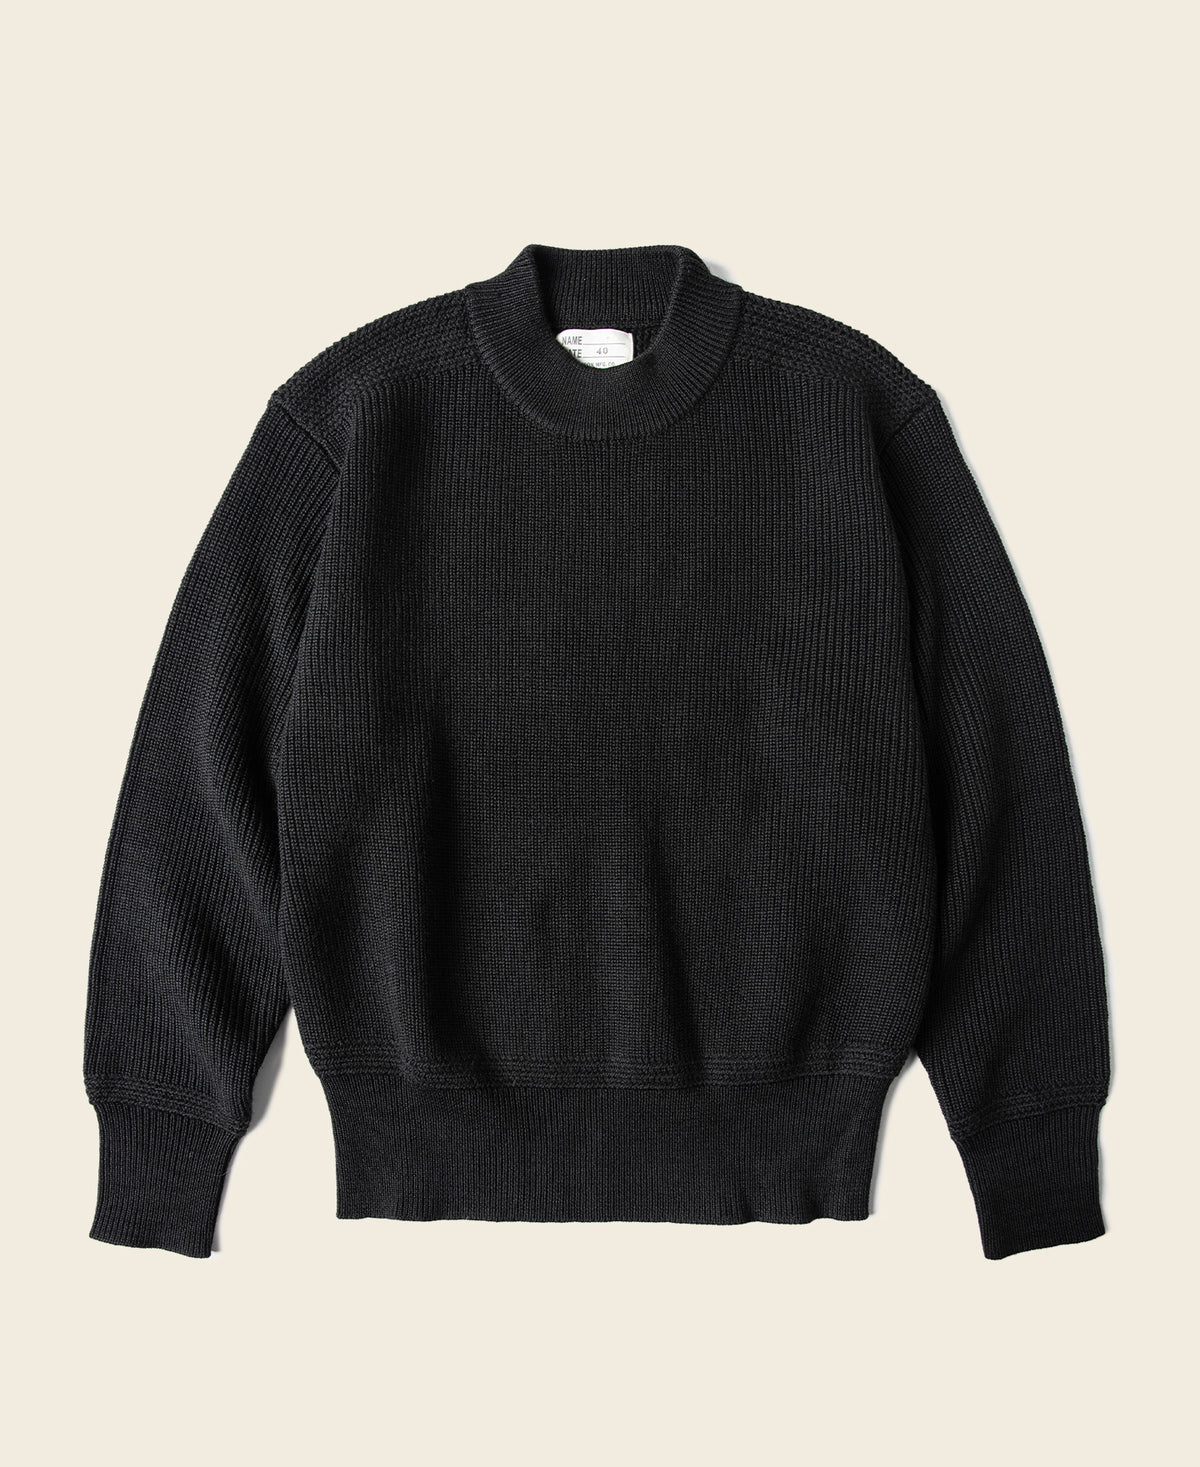 Pre-War Model USN Woolen Sweater - Black